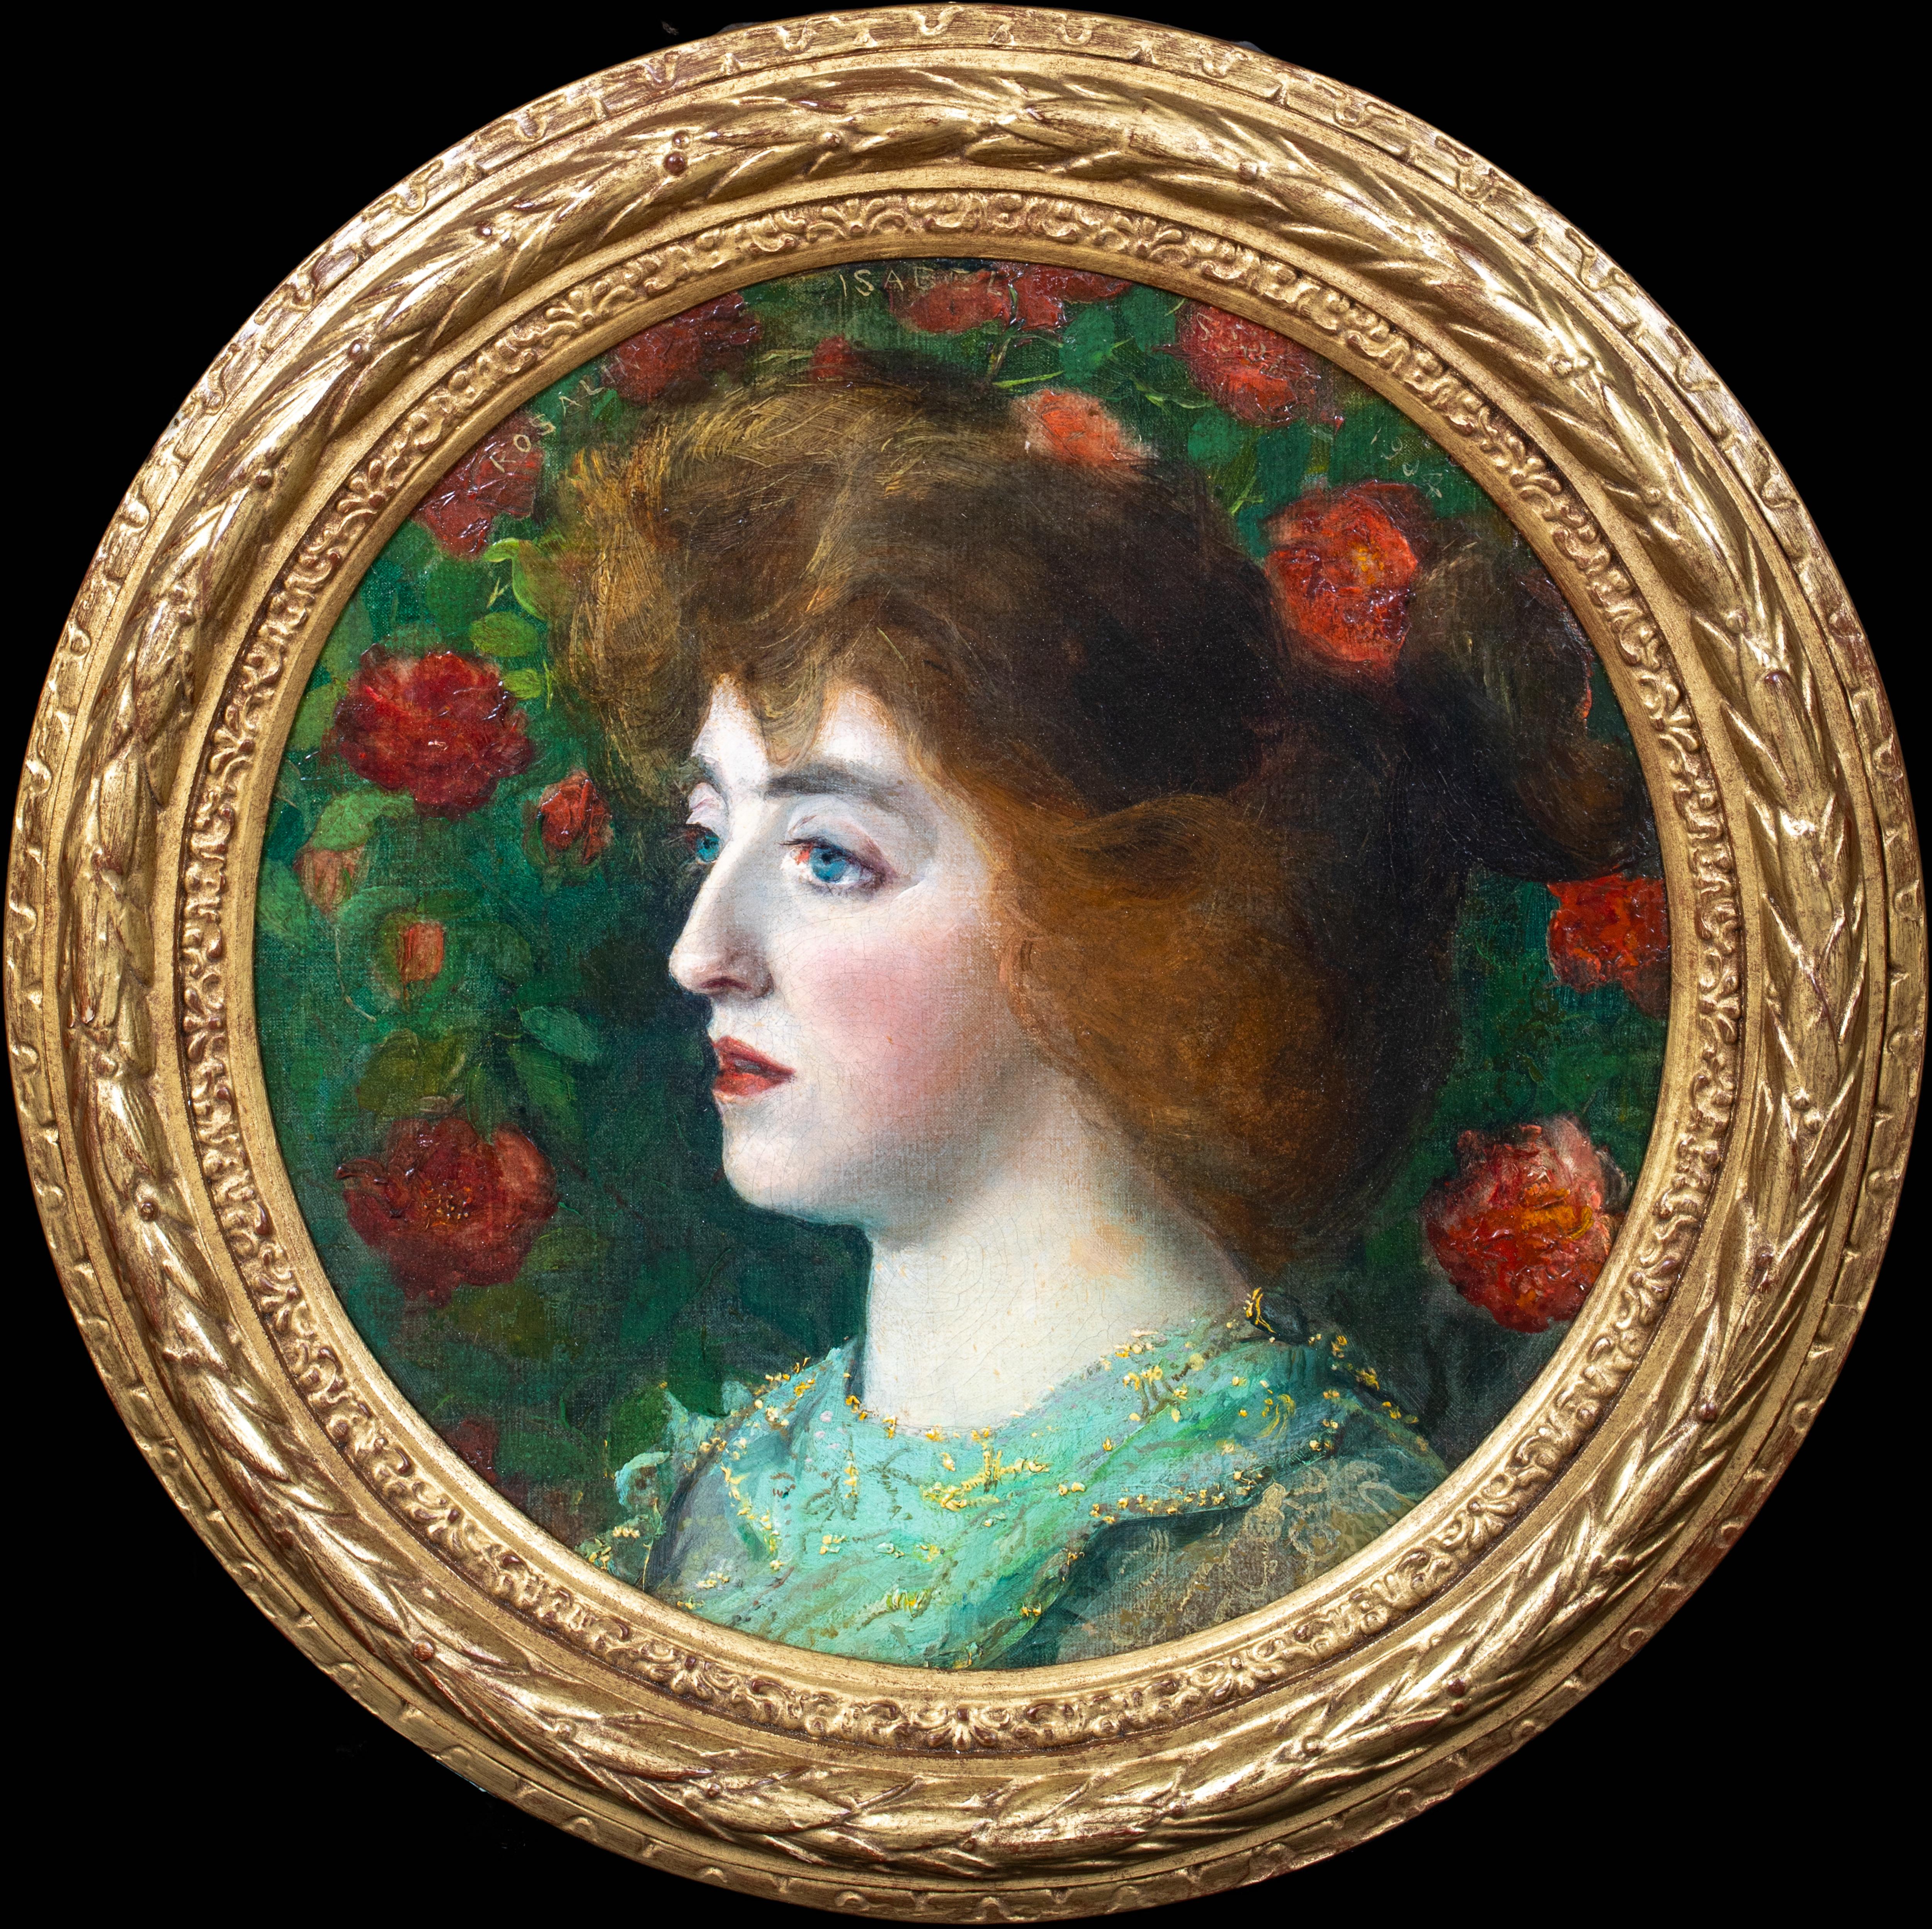 Portrait d'une Rosalin Isabel 19ème siècle préraphaélite / École Arts & Crafts - Painting de Unknown